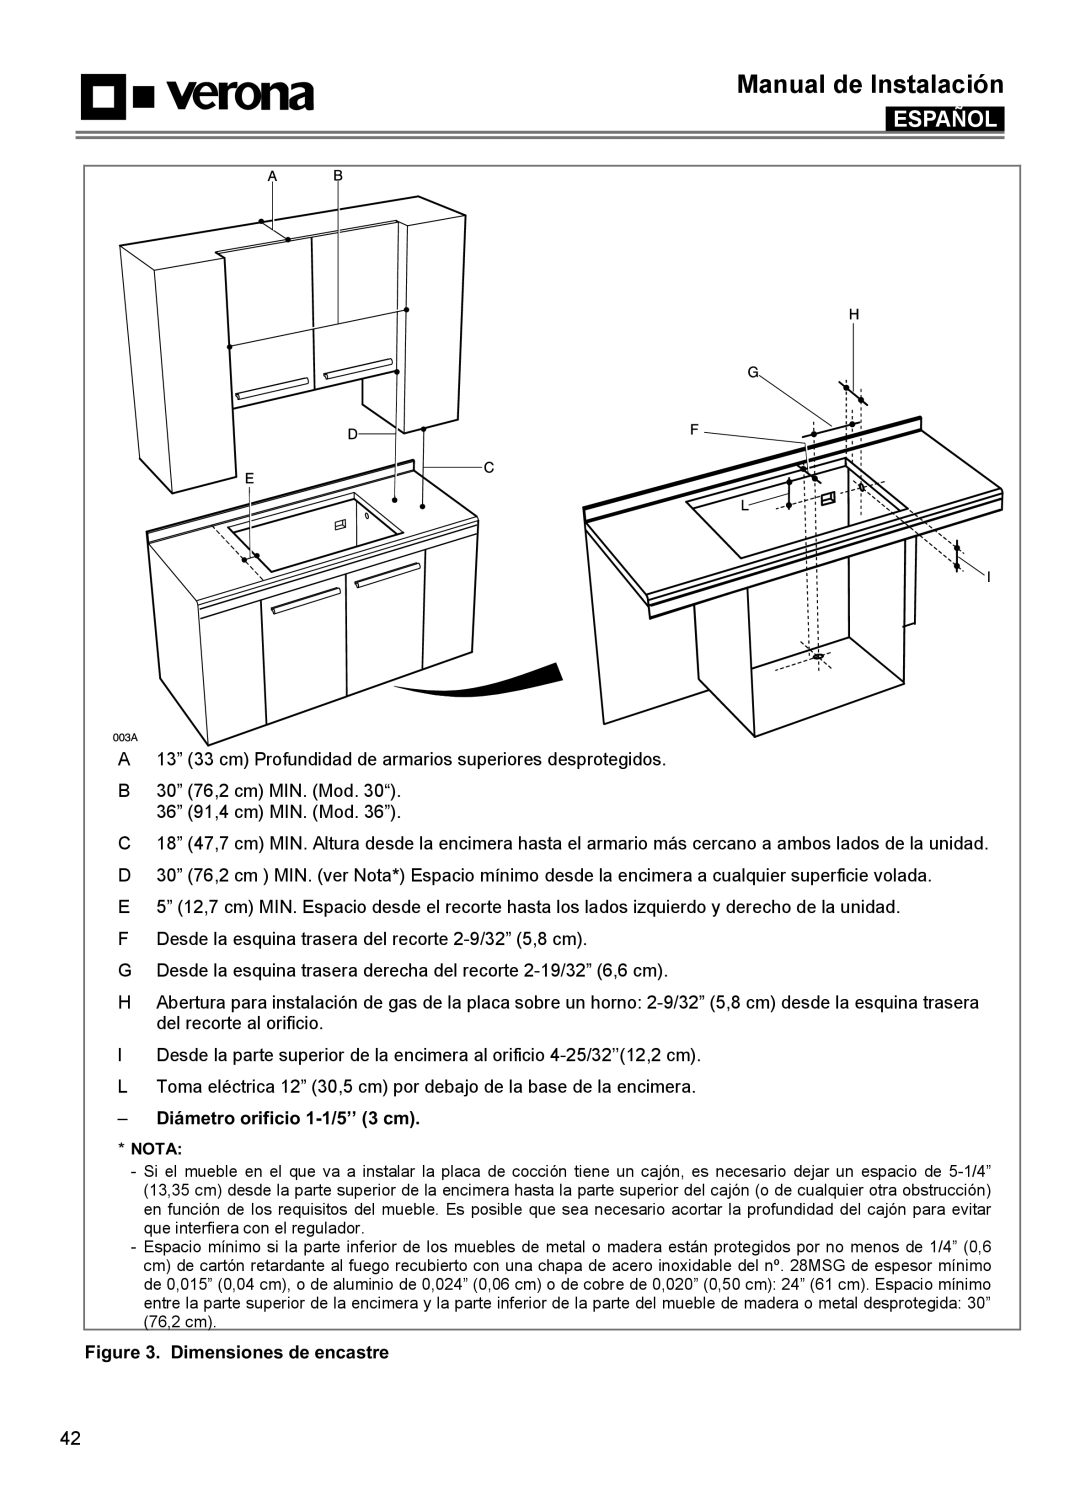 Verona VECTGMS365SS manual Diámetro orificio 1-1/5’’ 3 cm, Dimensiones de encastre, Manual de Instalación, Español, Nota 